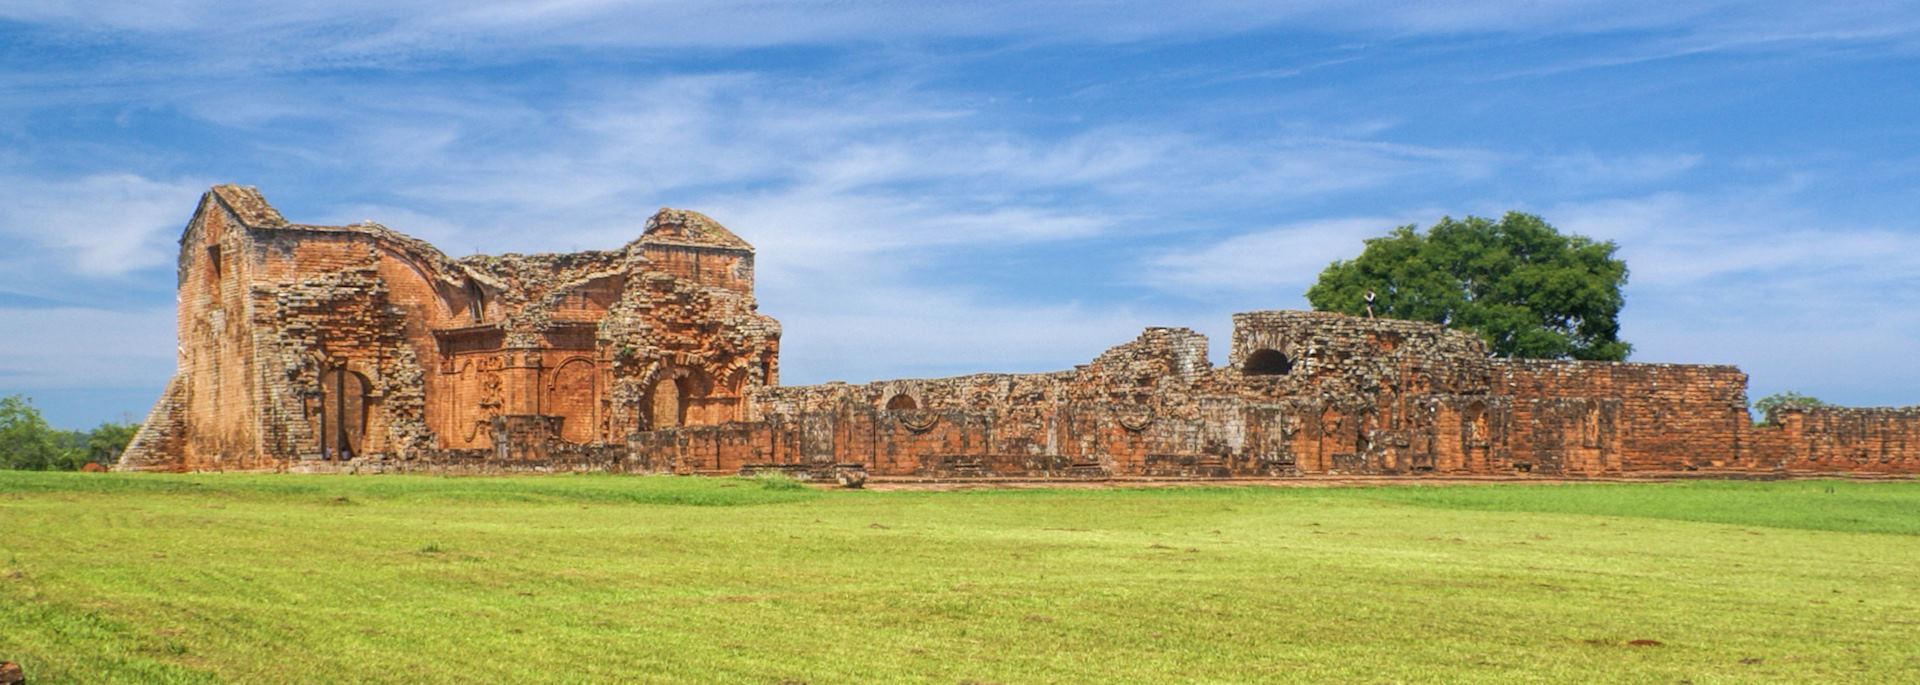 Encarnacion and Jesuit ruins, Paraguay